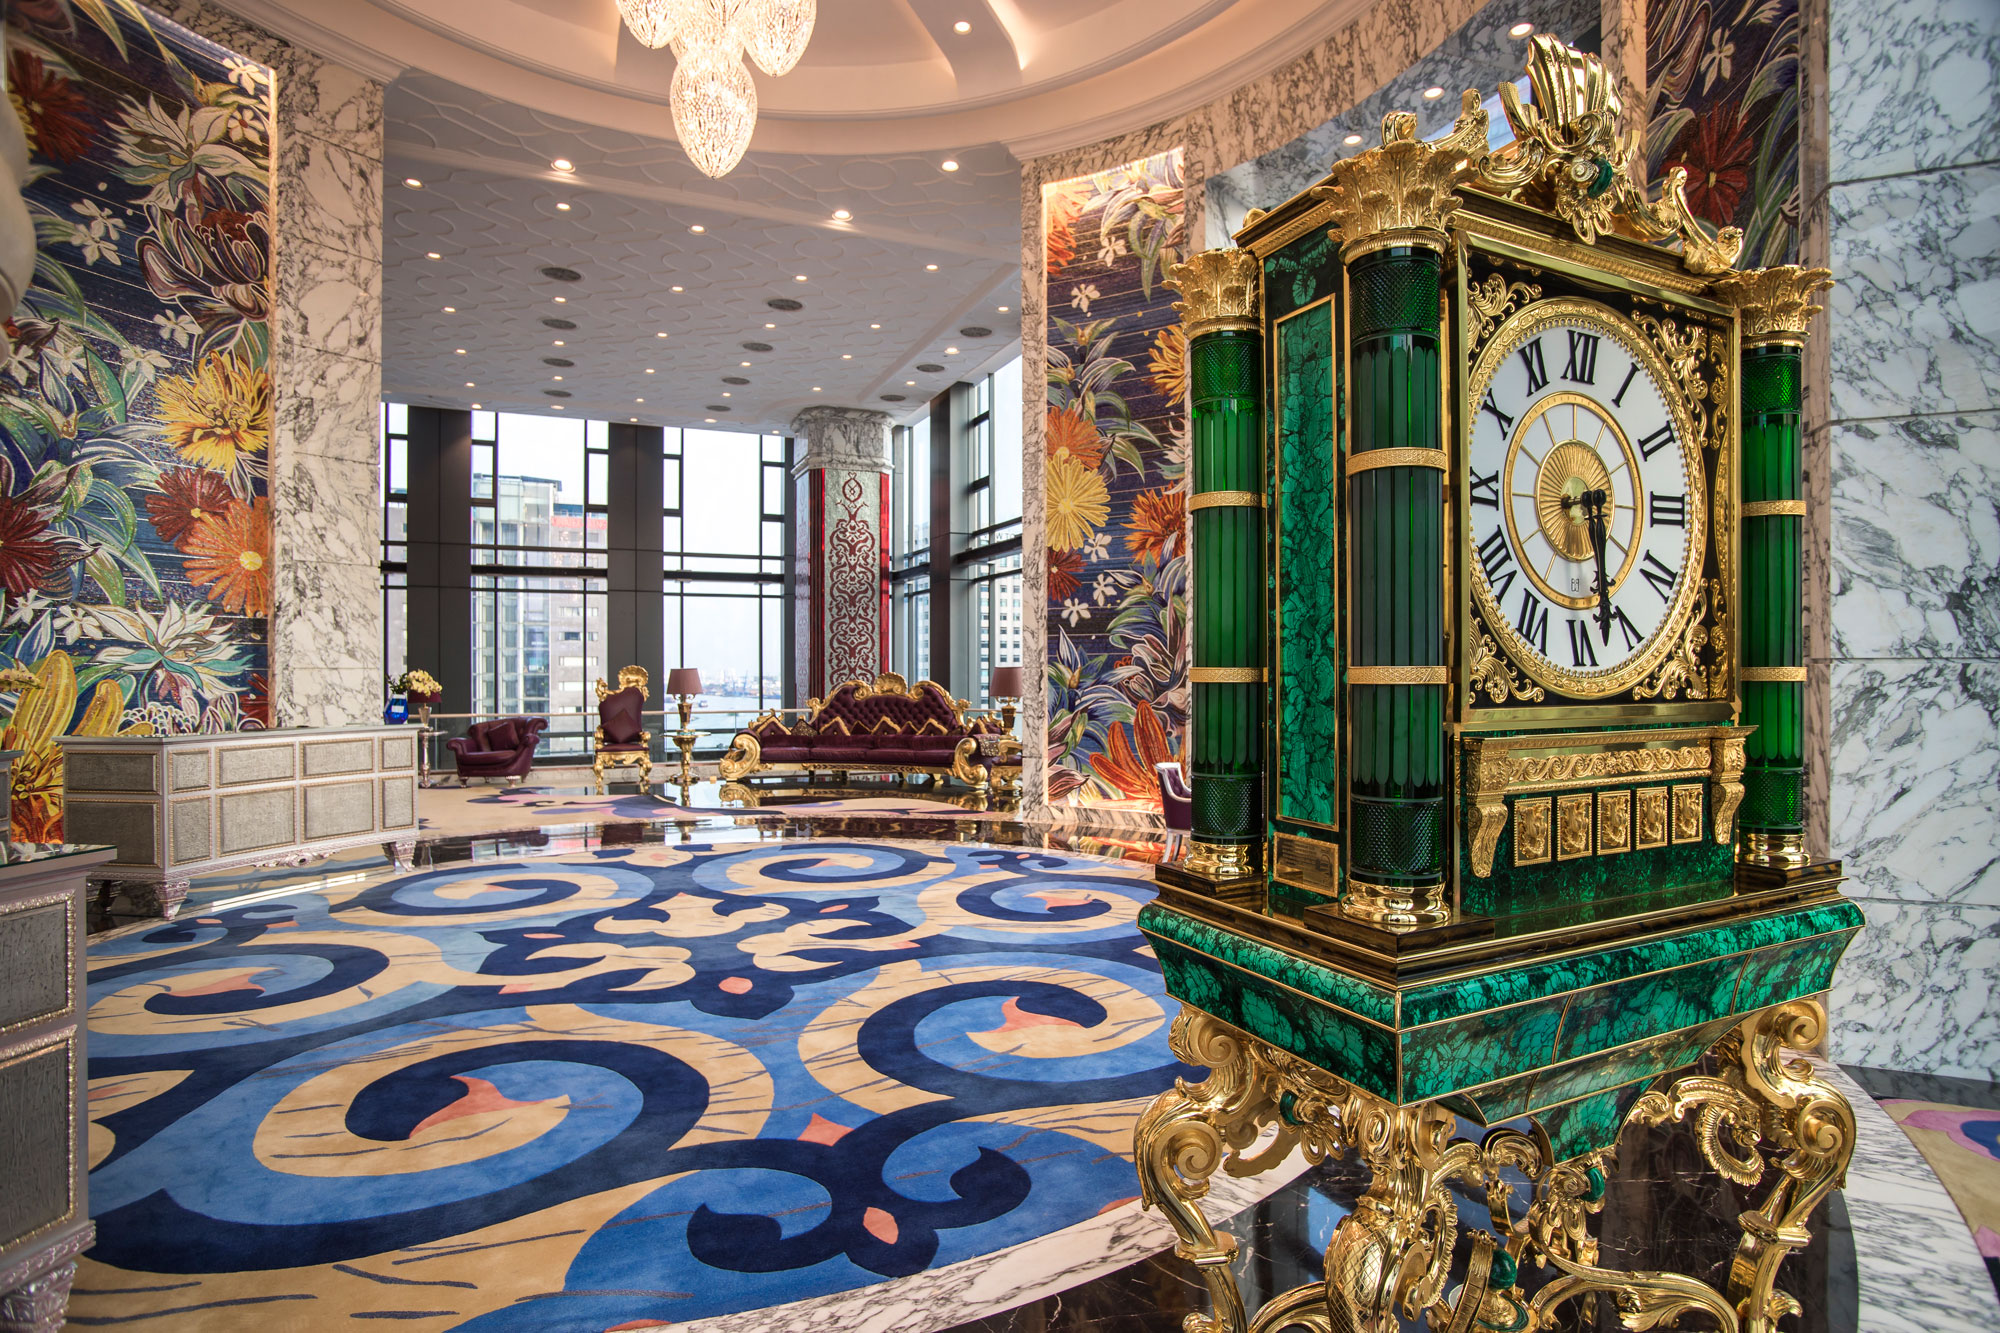 The Reverie Saigon là khách sạn sang trọng, cao cấp bậc nhất tại TP Hồ Chí Minh. Sảnh chờ khách sạn được thiết kế sang trọng theo phong cách cổ điển Châu Âu, cùng với bar sành điệu tuyệt đỉnh, các nhà hàng đẳng cấp phong cách phương Tây và Đông Dương, spa thượng hạng và hạ tầng đạt chuẩn cao cấp quốc tế, khách sạn là điểm đến khao khát của khách du lịch trong và quốc tế. 